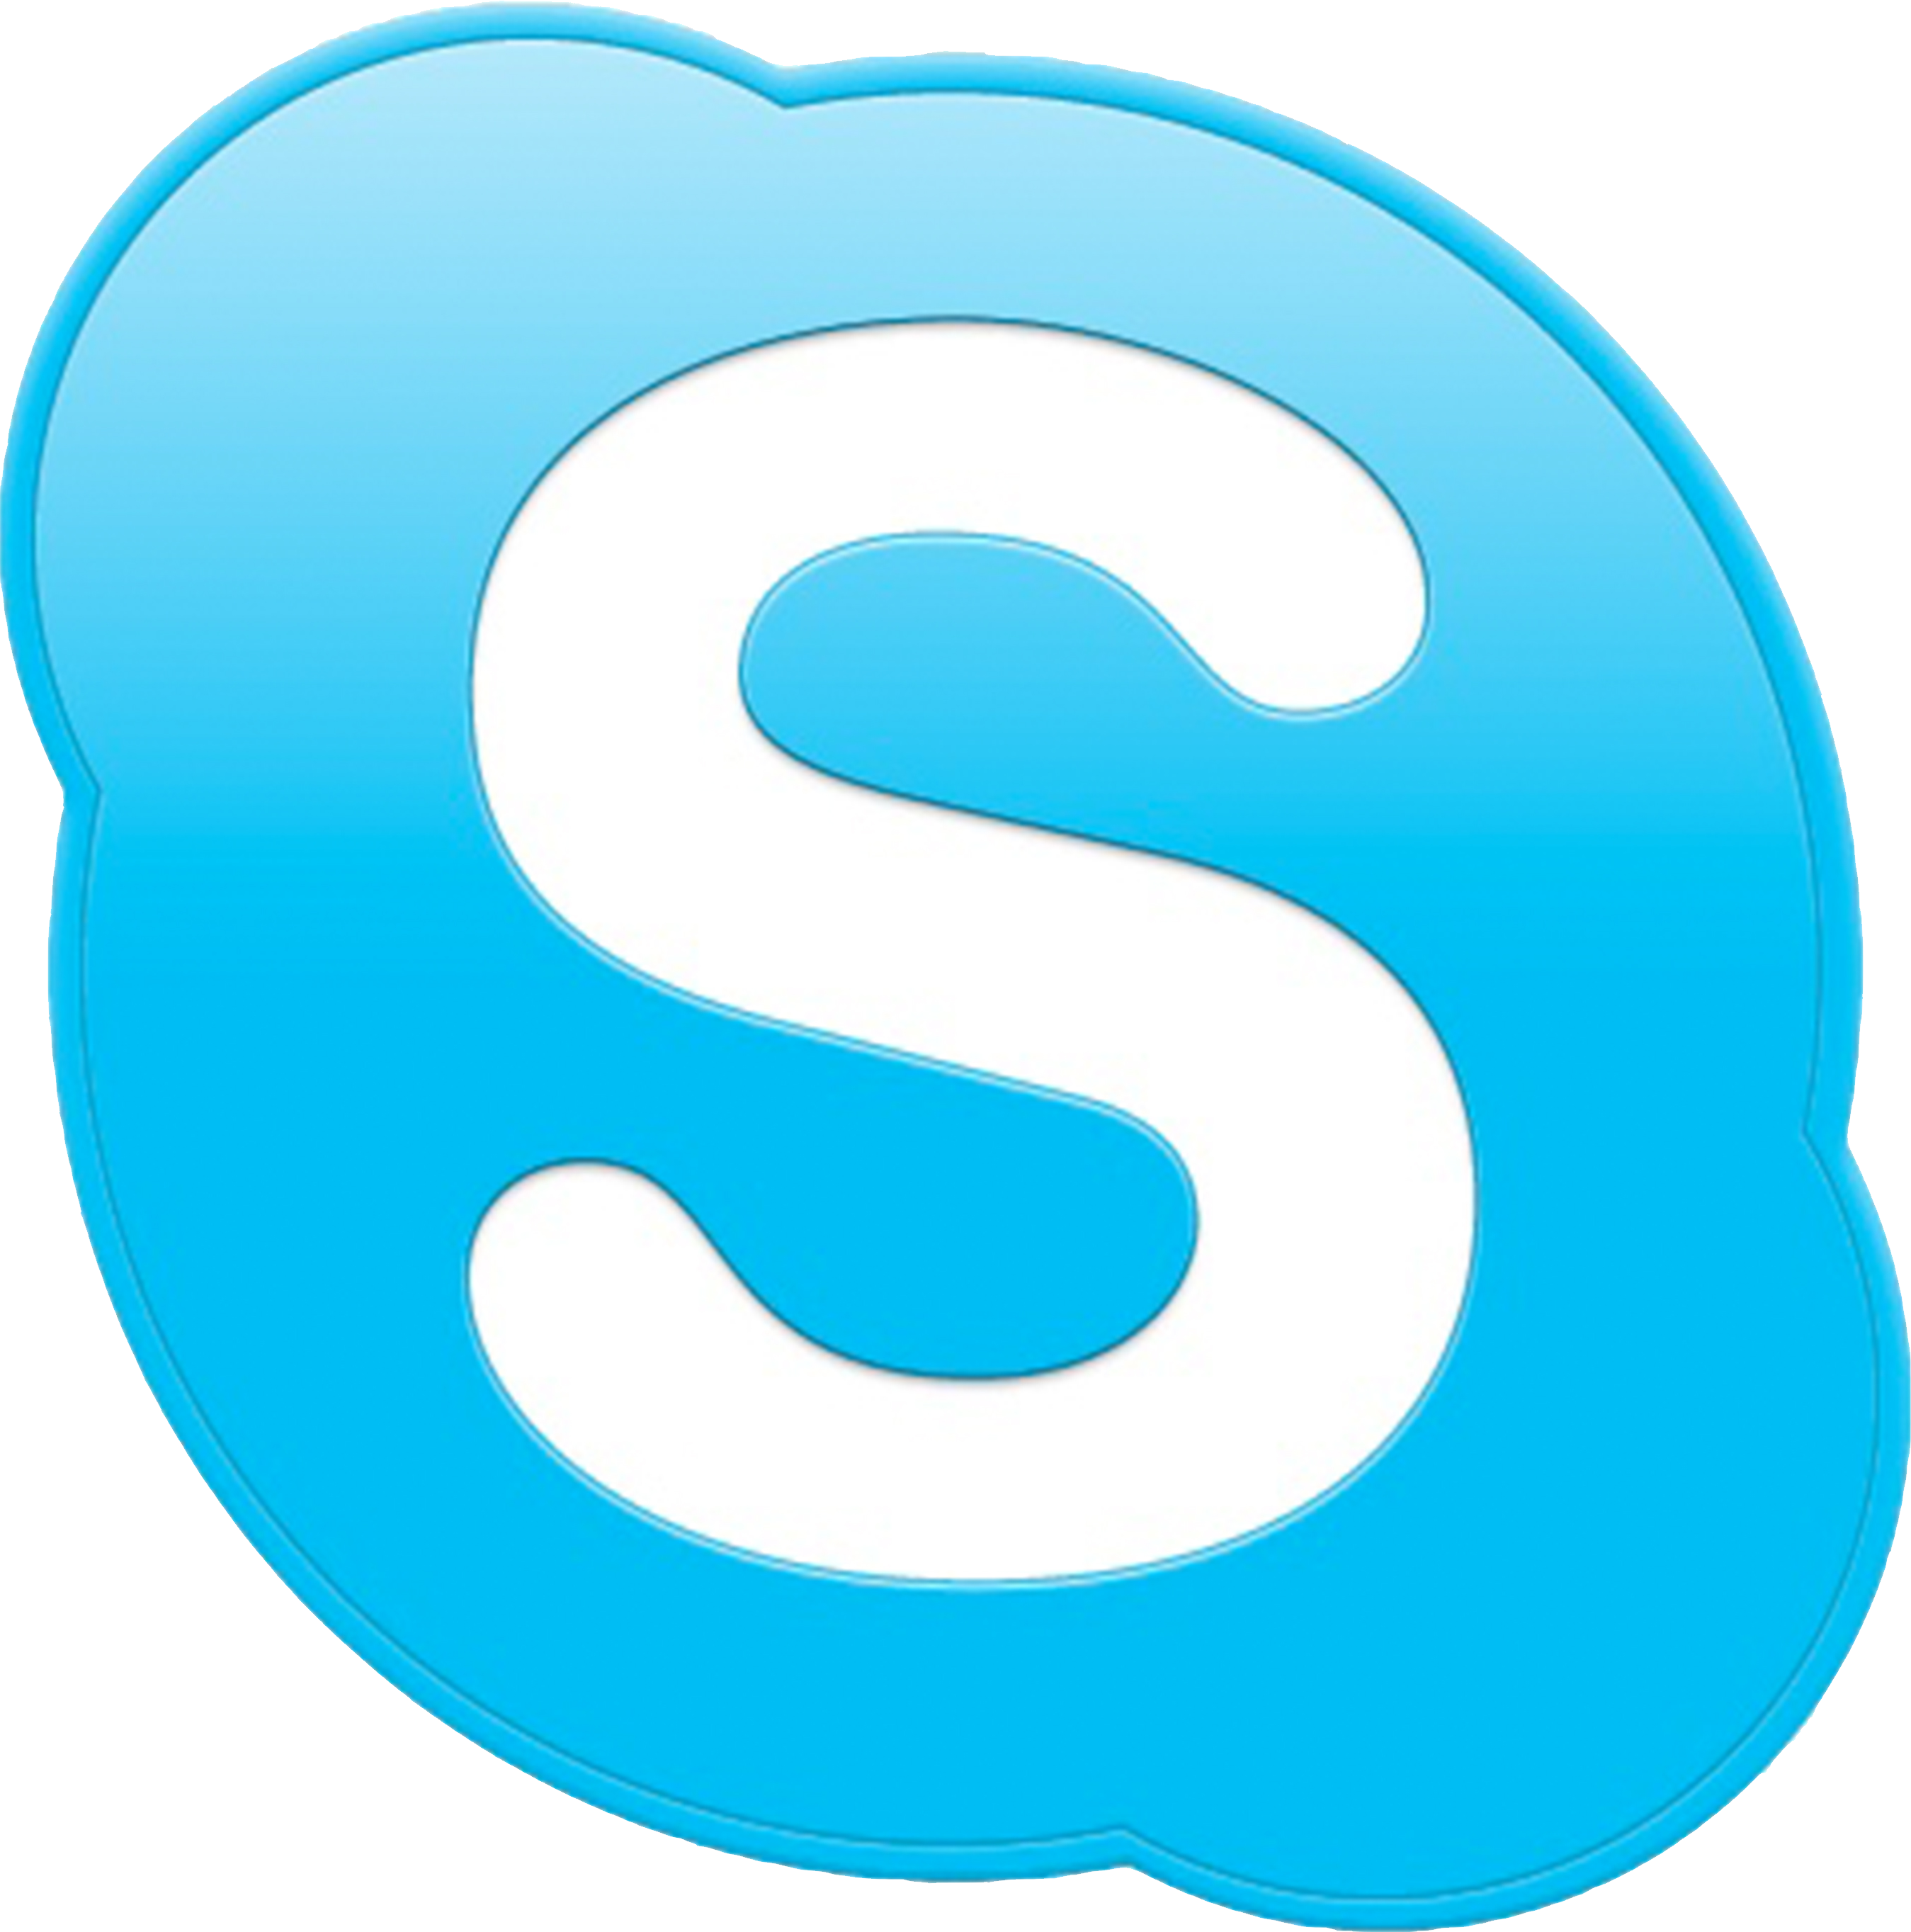 когда-то Skype был одной из программ для windows 10, которую устанавливал каждый